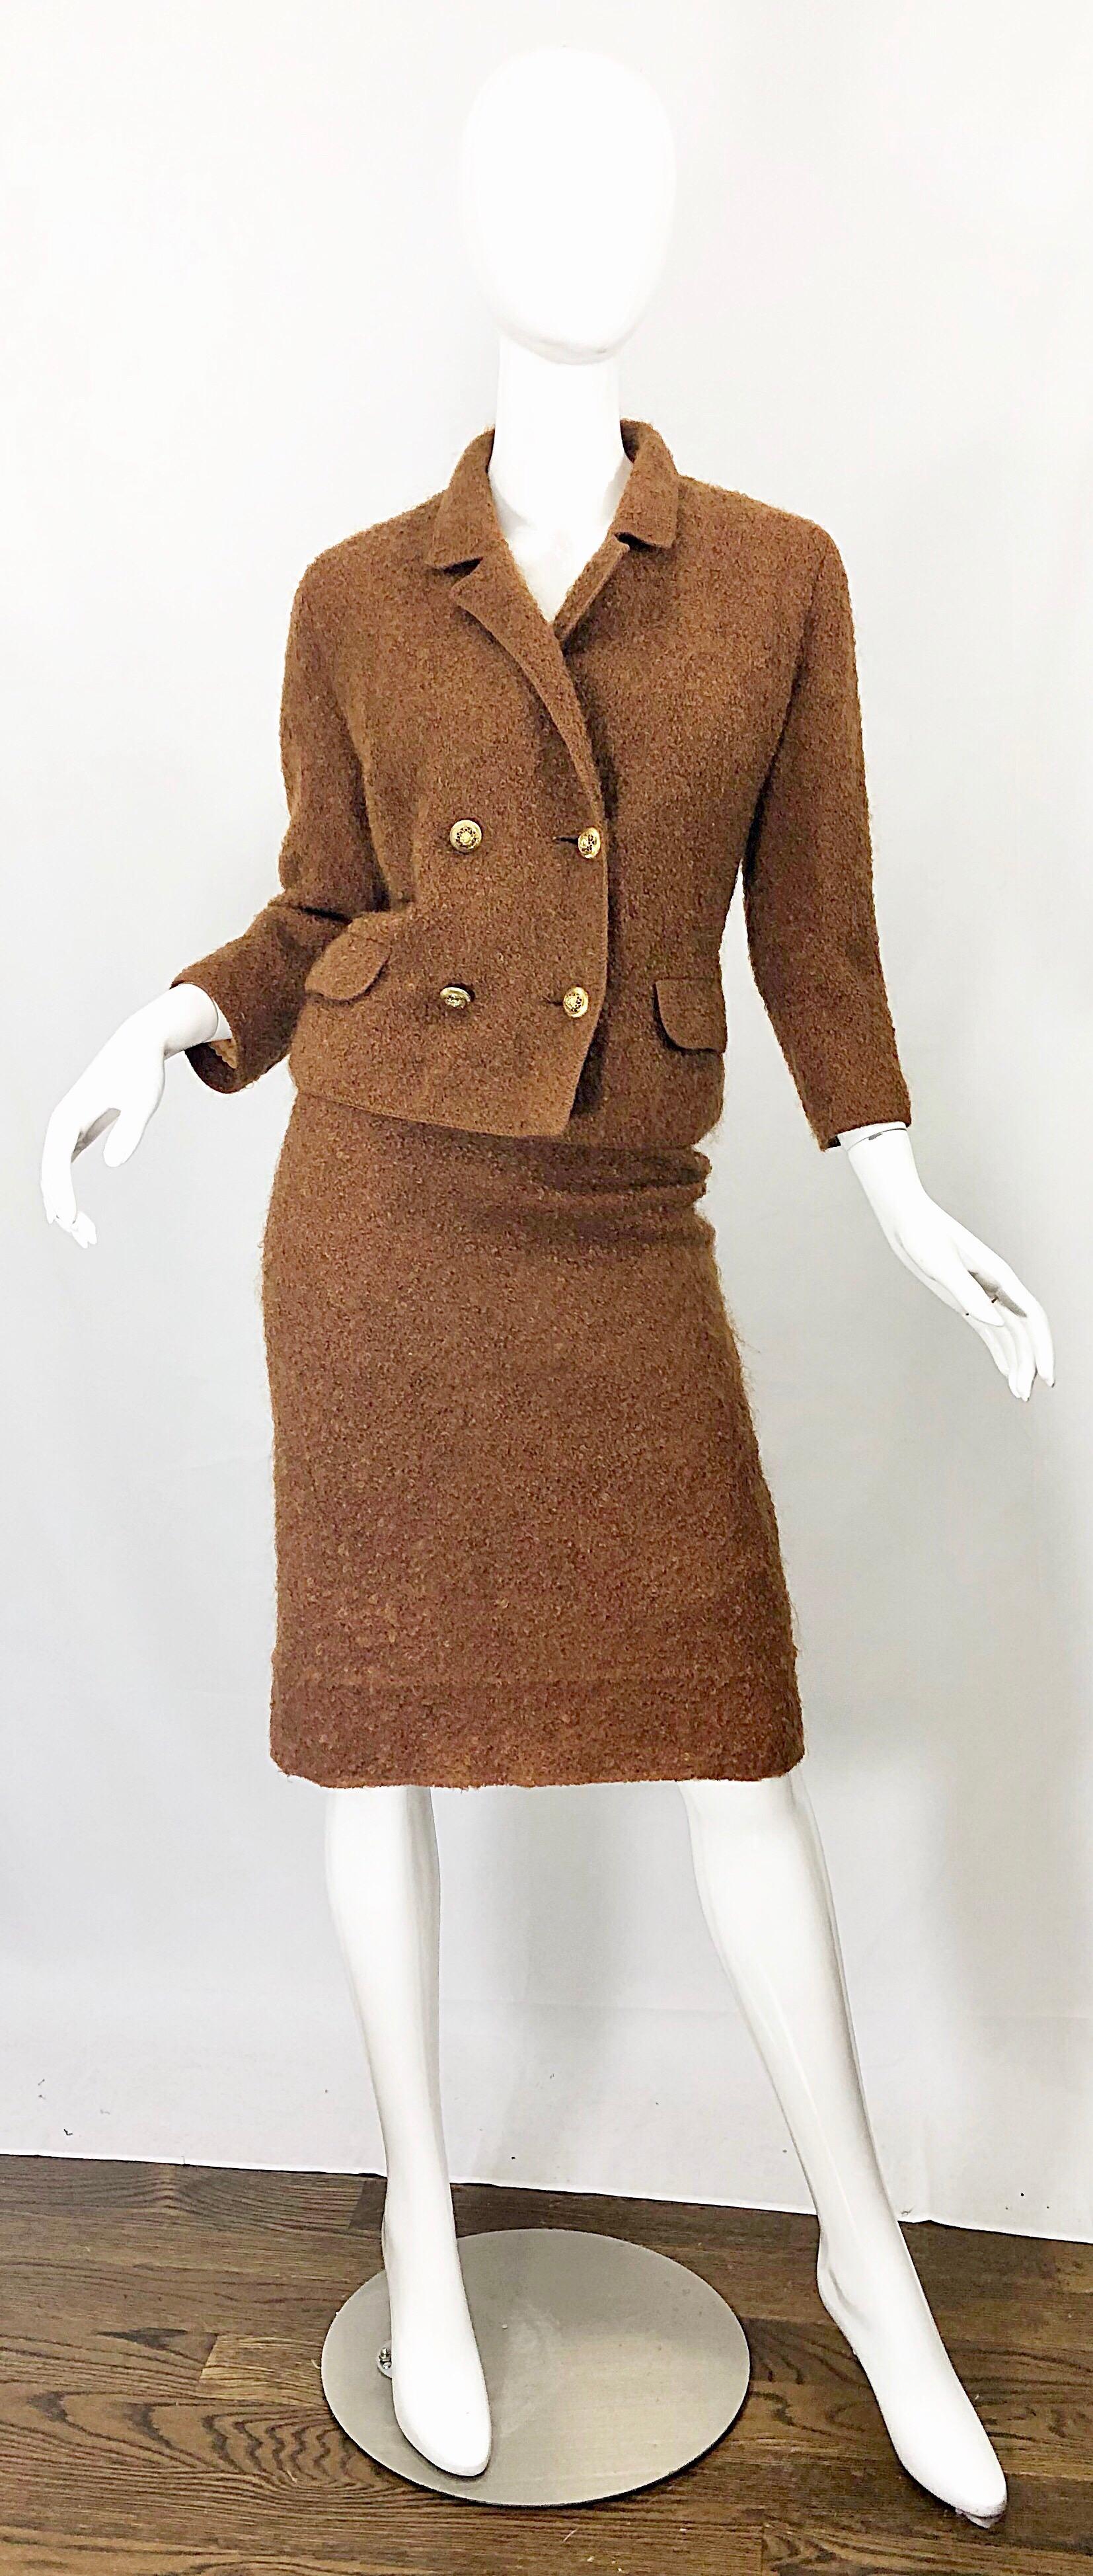 Incroyablement chic tailleur jupe en mohair brun rouille tabac I. MAGNIN du début des années 1960 ! Il est composé d'une laine mohair douce entièrement doublée d'une mousseline de soie nude. Blazer ajusté à double boutonnage avec une jupe crayon à